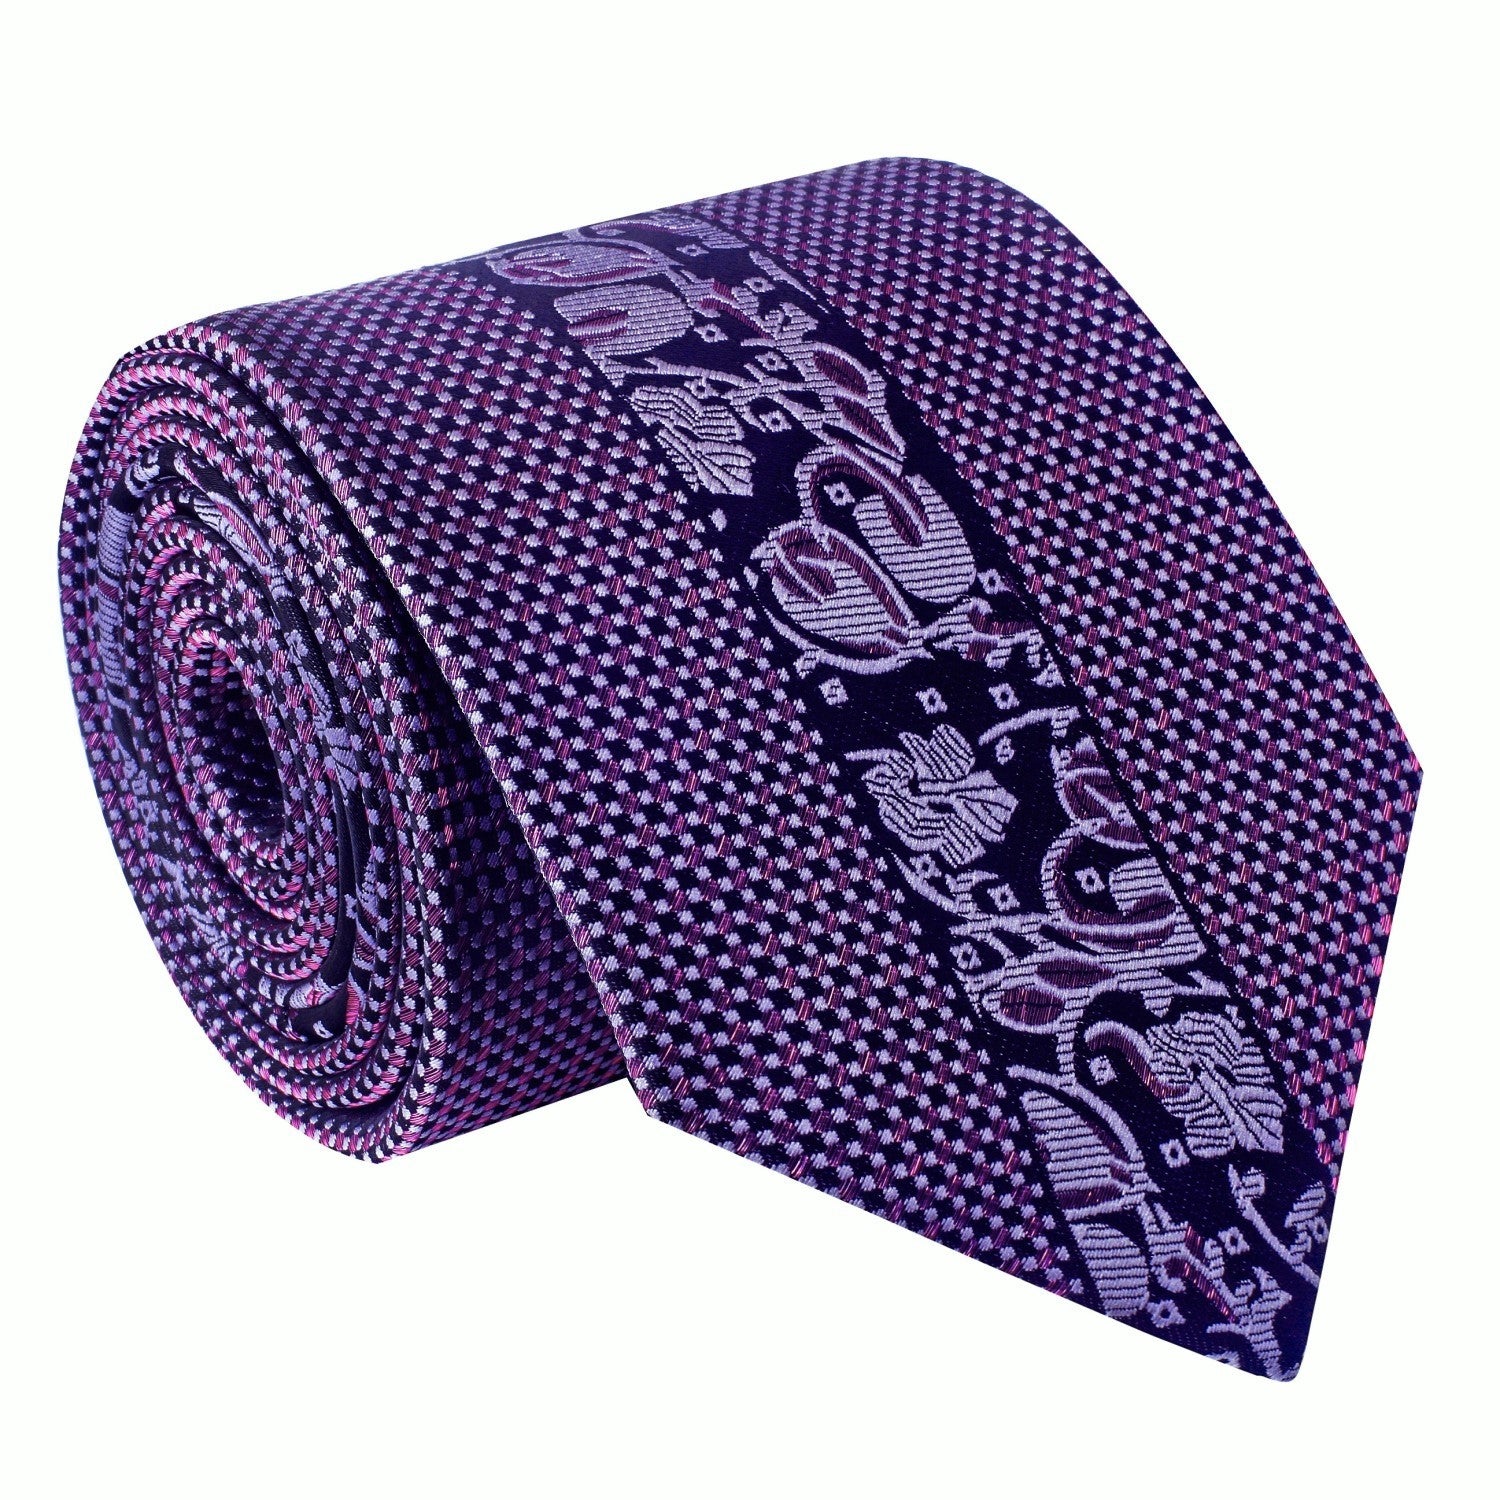 Designer's Choice Necktie